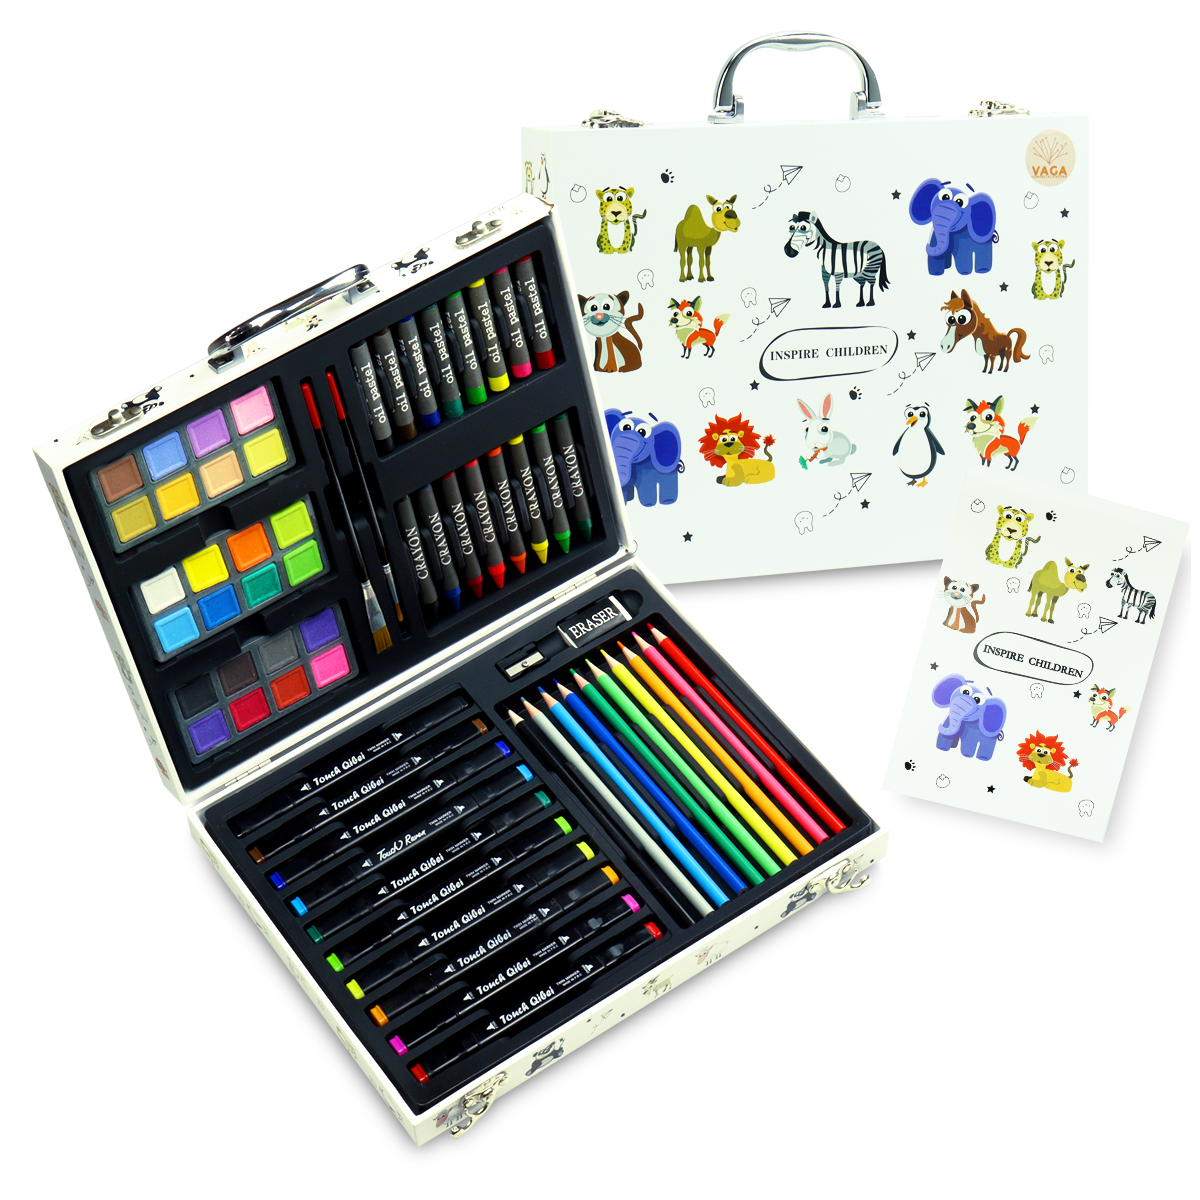 Set Arte Colores Crayones Plumones Acuarelas Estuche 220 Pzs